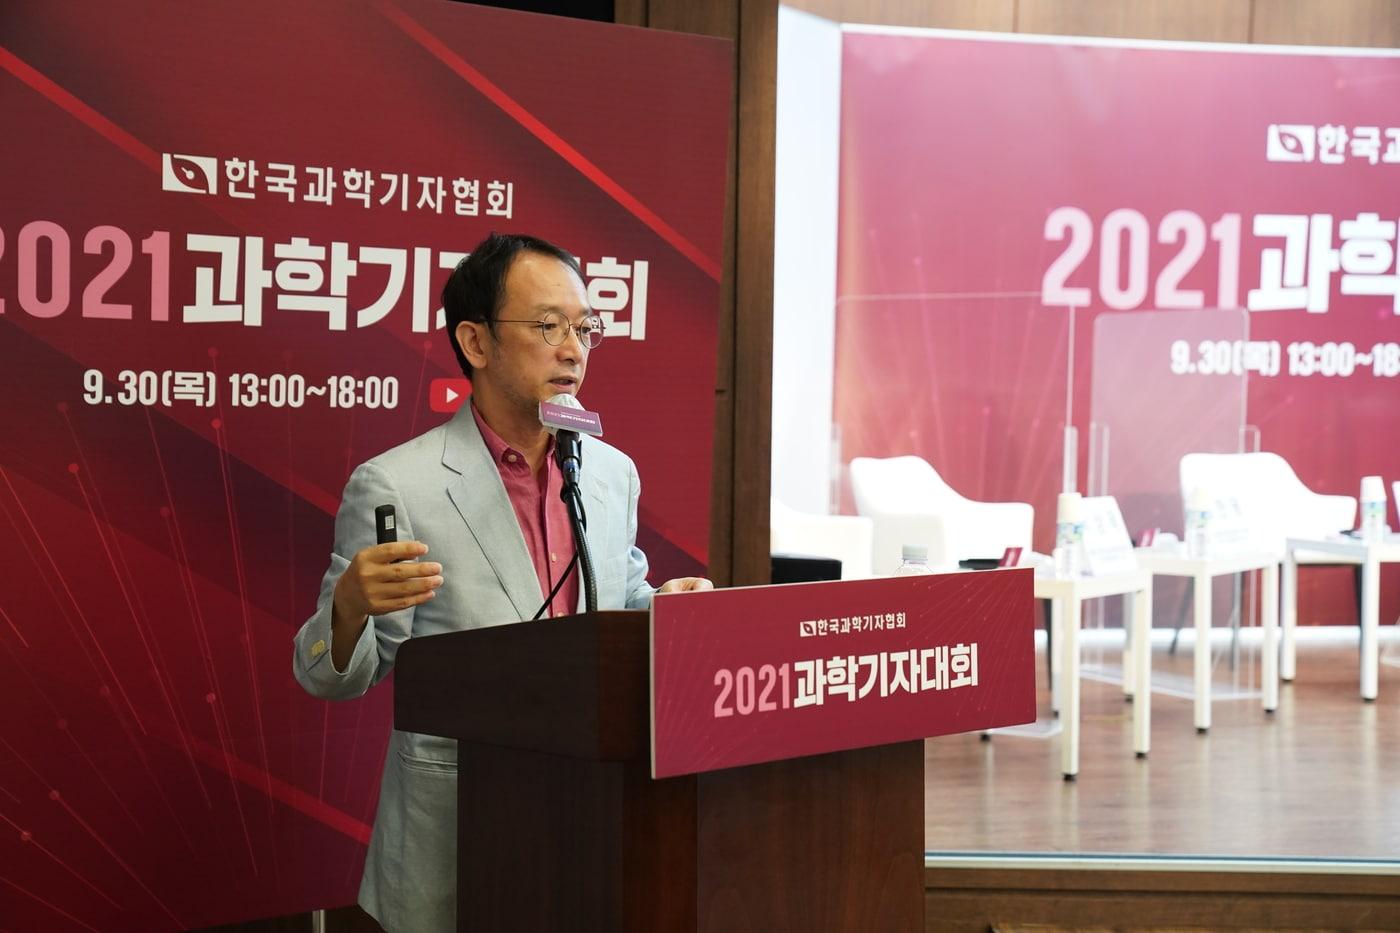 염한웅 국가과학기술자문회의 부의장이 30일 개최된 2021과학기자대회에서 발표하고 있다. &#40;한국과학기자협회 제공&#41; 2021.09.30 /뉴스1